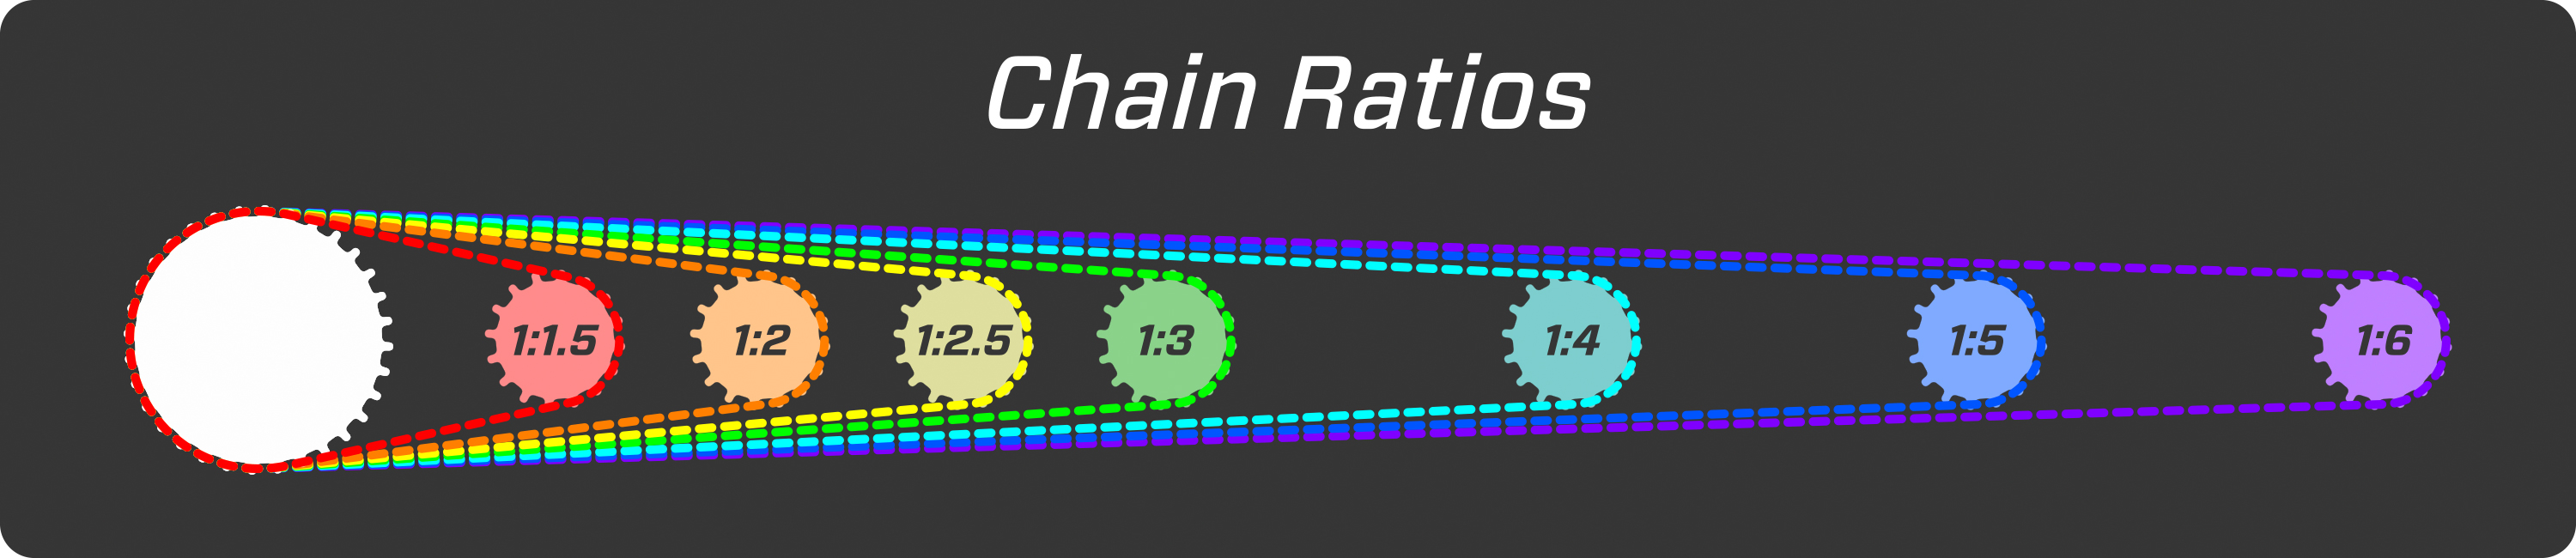 Chain ratios